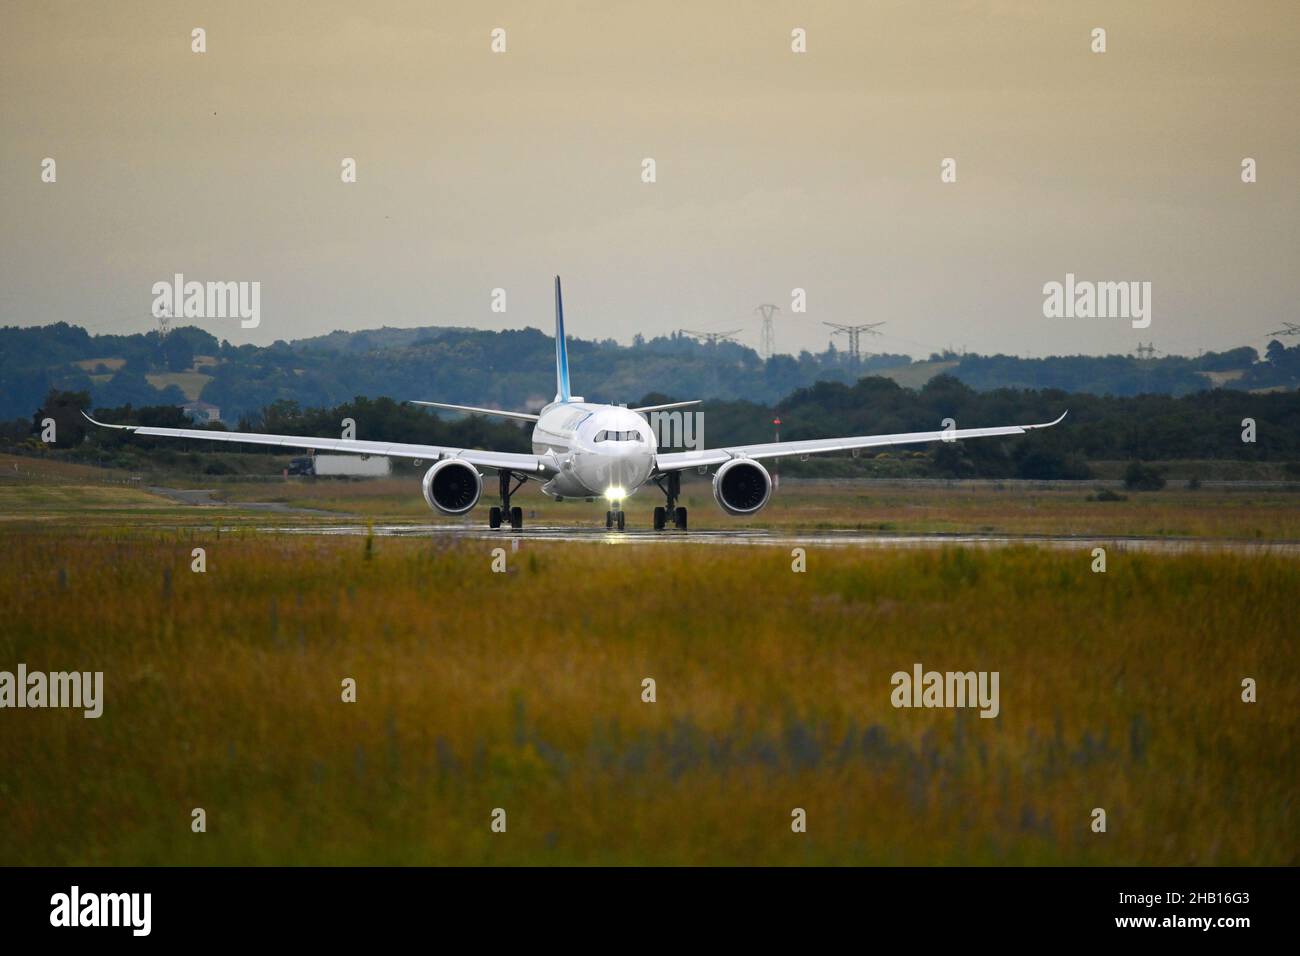 Colombier-Saugnieu, aéroport de Lyon Saint-Exupéry (centre-est de la France) : Corsair International Airbus A330neo, avion de ligne en attente sur le tarmac au soleil Banque D'Images